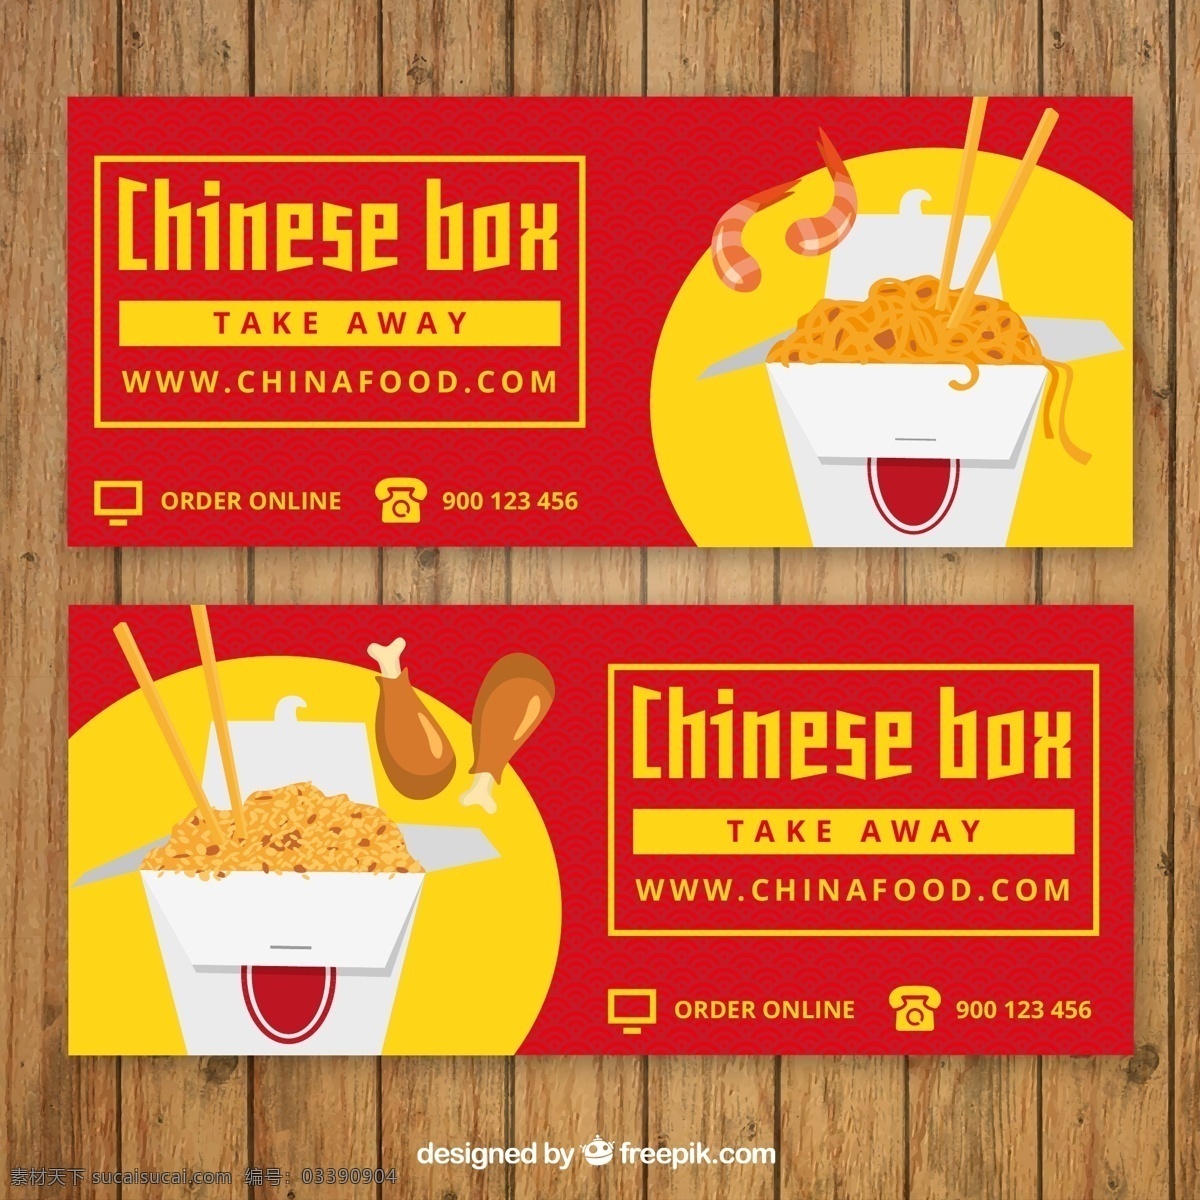 款 美味 中国 料理 外卖 矢量图 鸡腿 卡通 宣传海报 红色 矢量素材 装饰图案